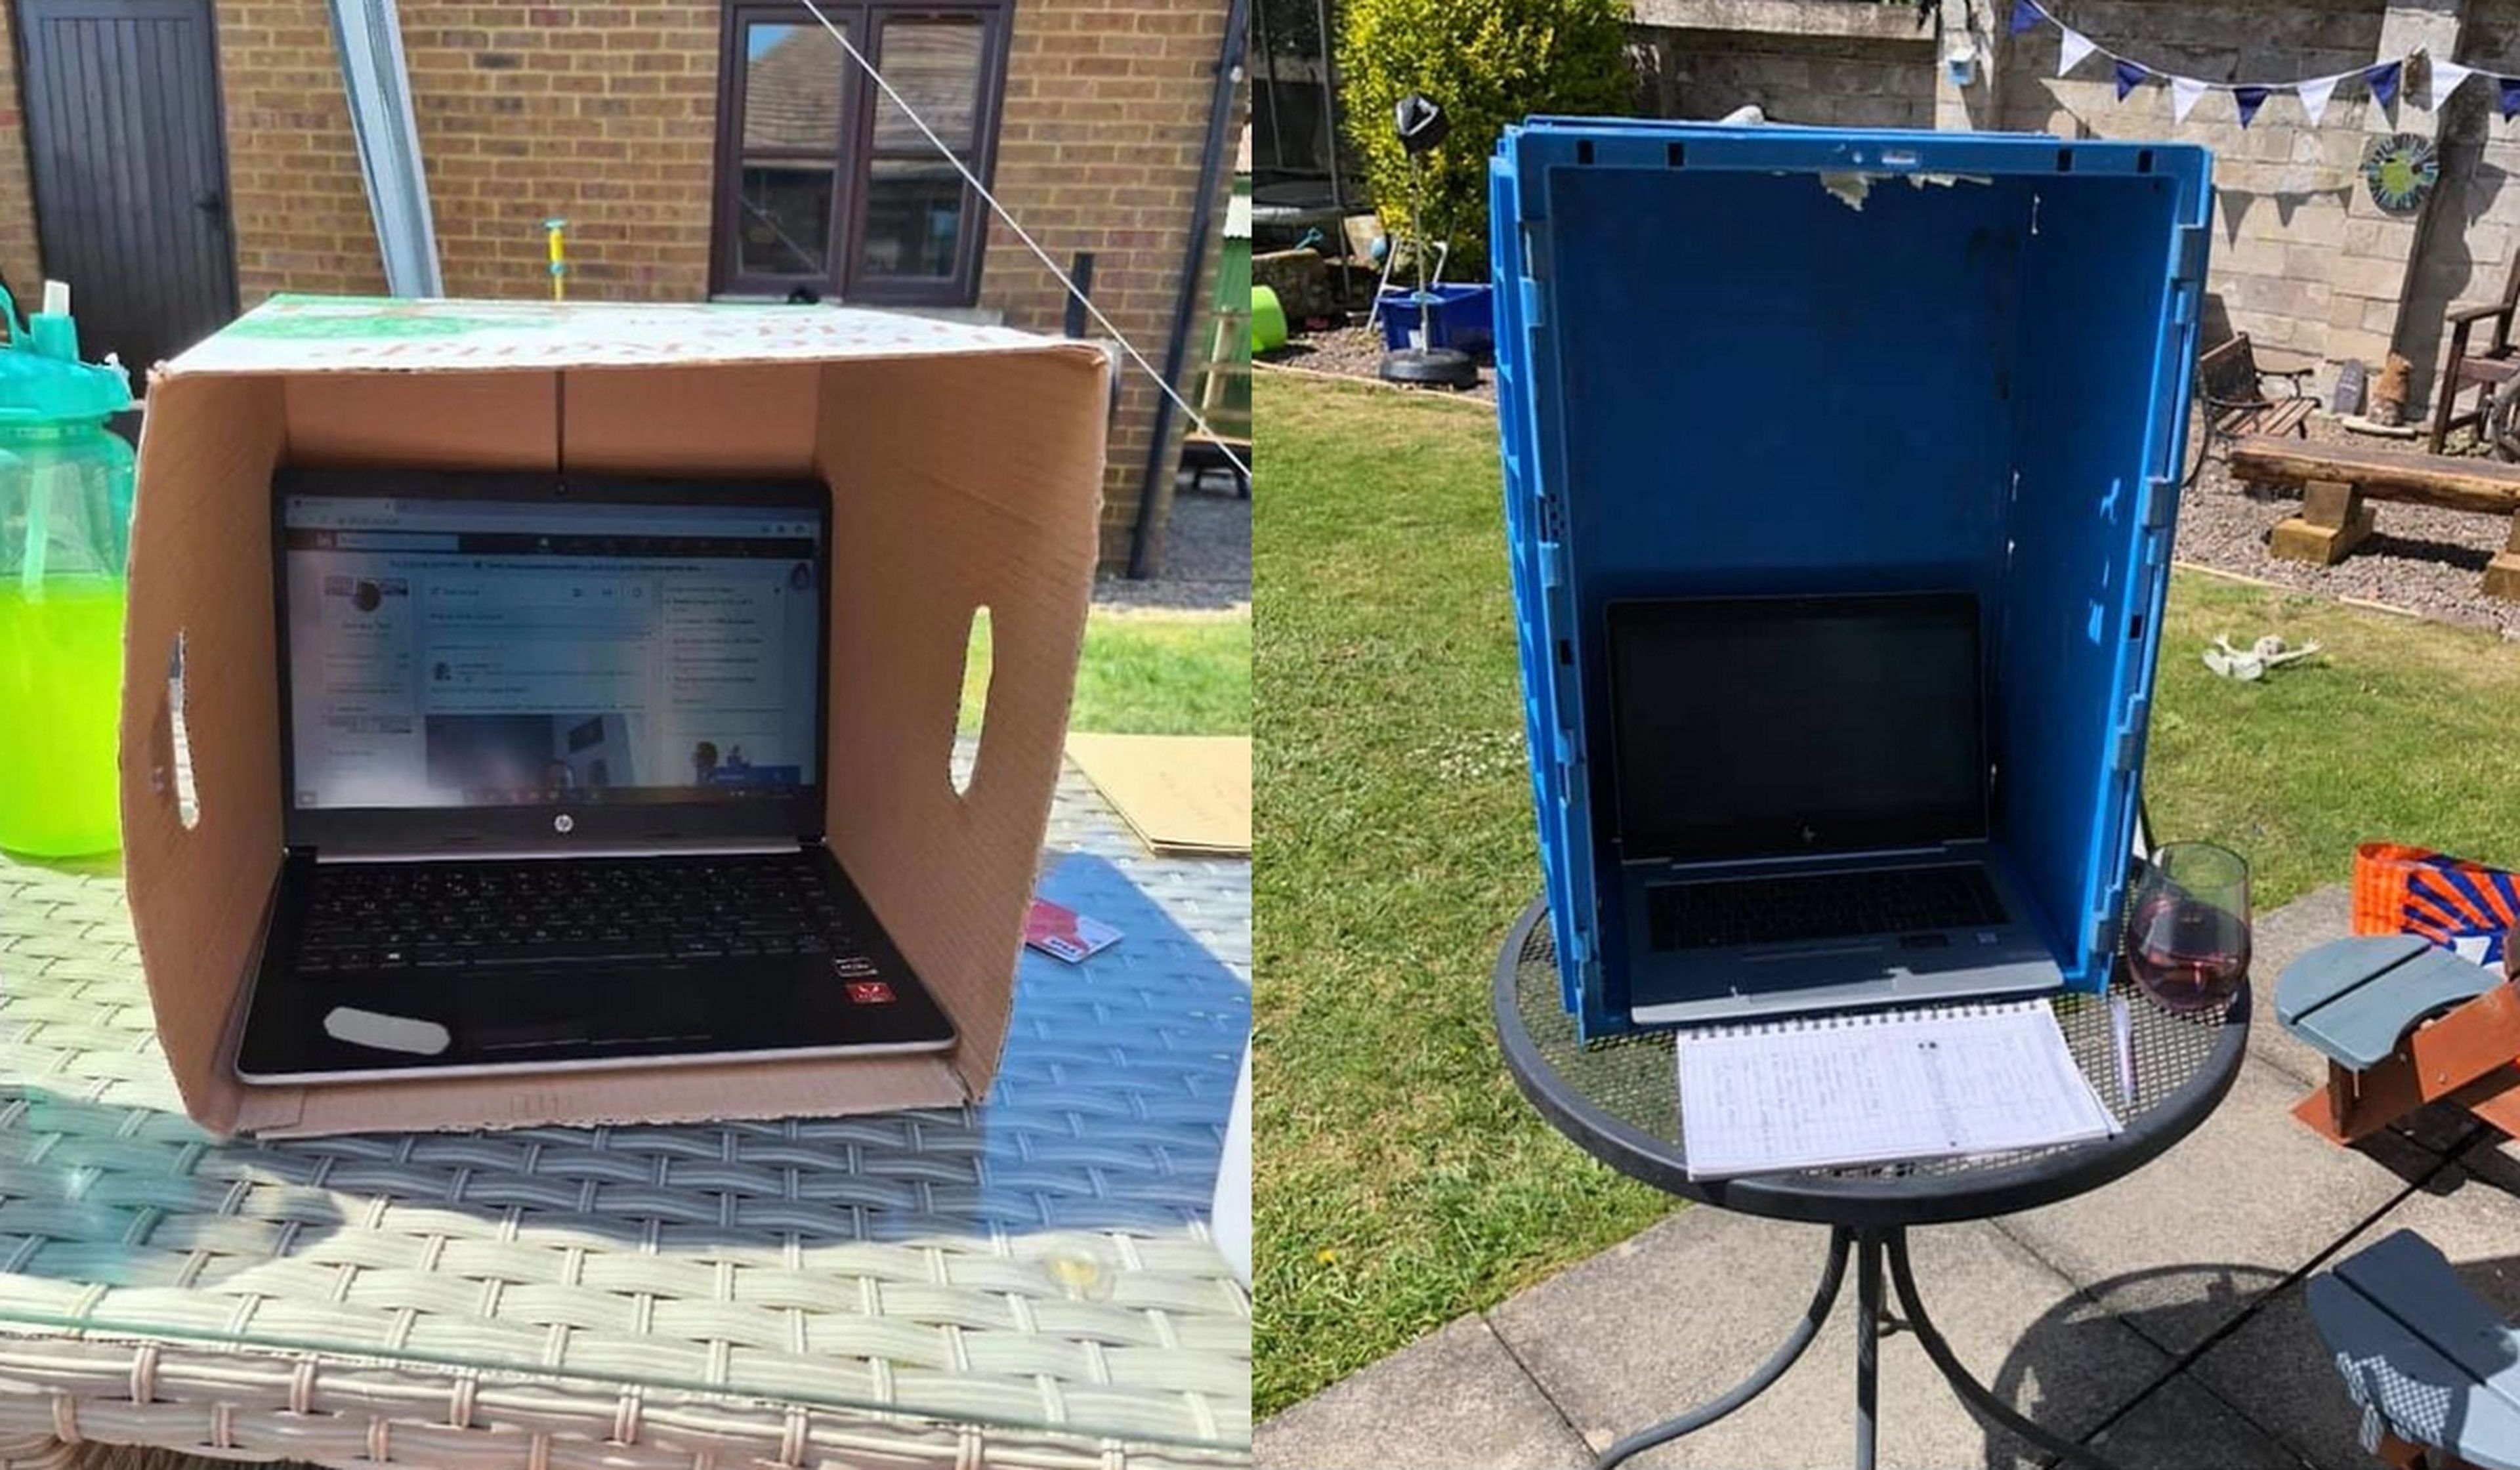 Esta idea barata para proteger el portátil del sol mientras teletrabajas se ha vuelto viral